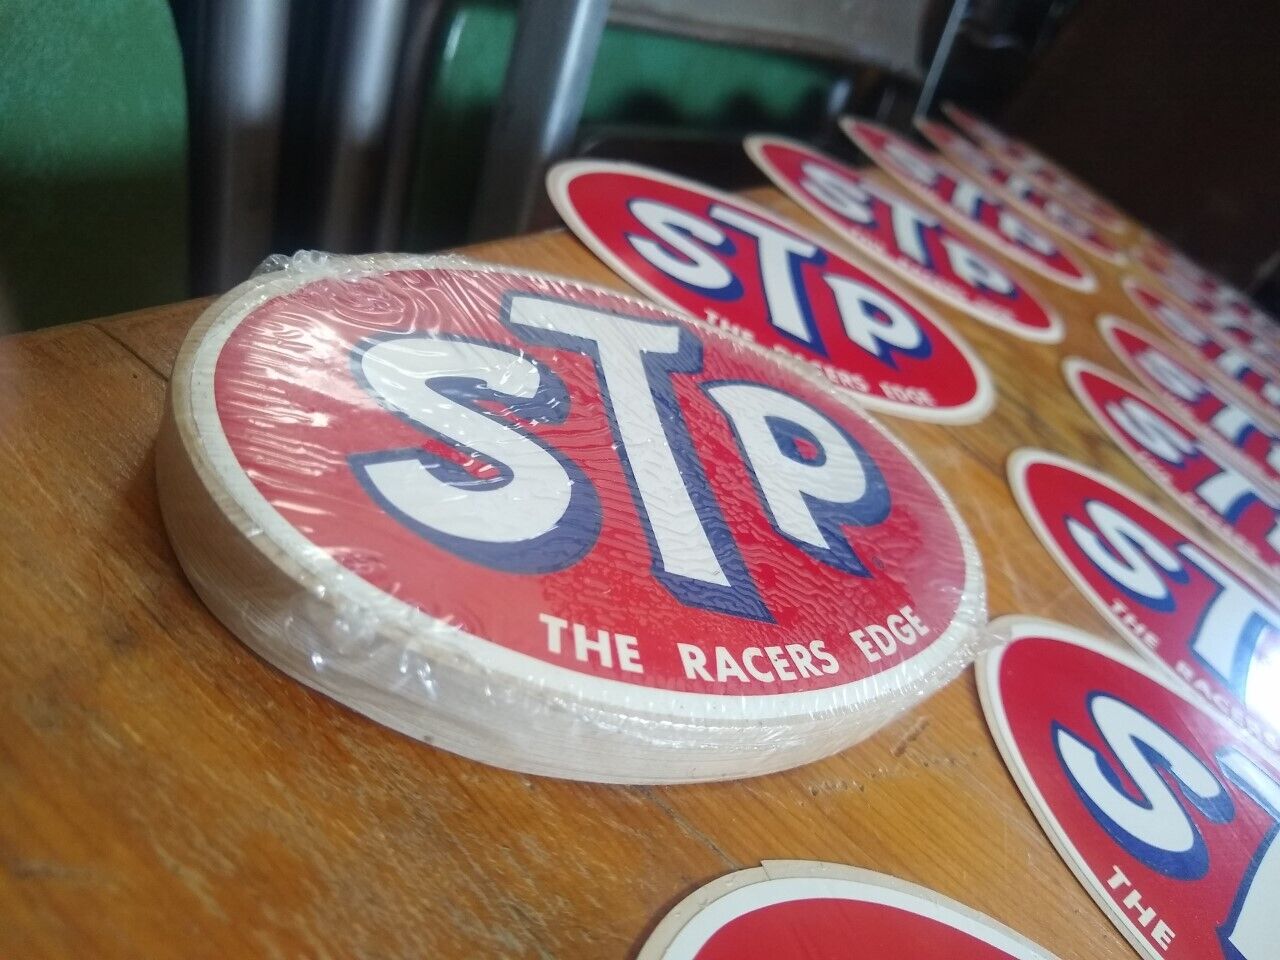 100 STP “The Racer’s Edge” Vinyl Sticker - TWO Sealed Packs of 50, NOS 1970s